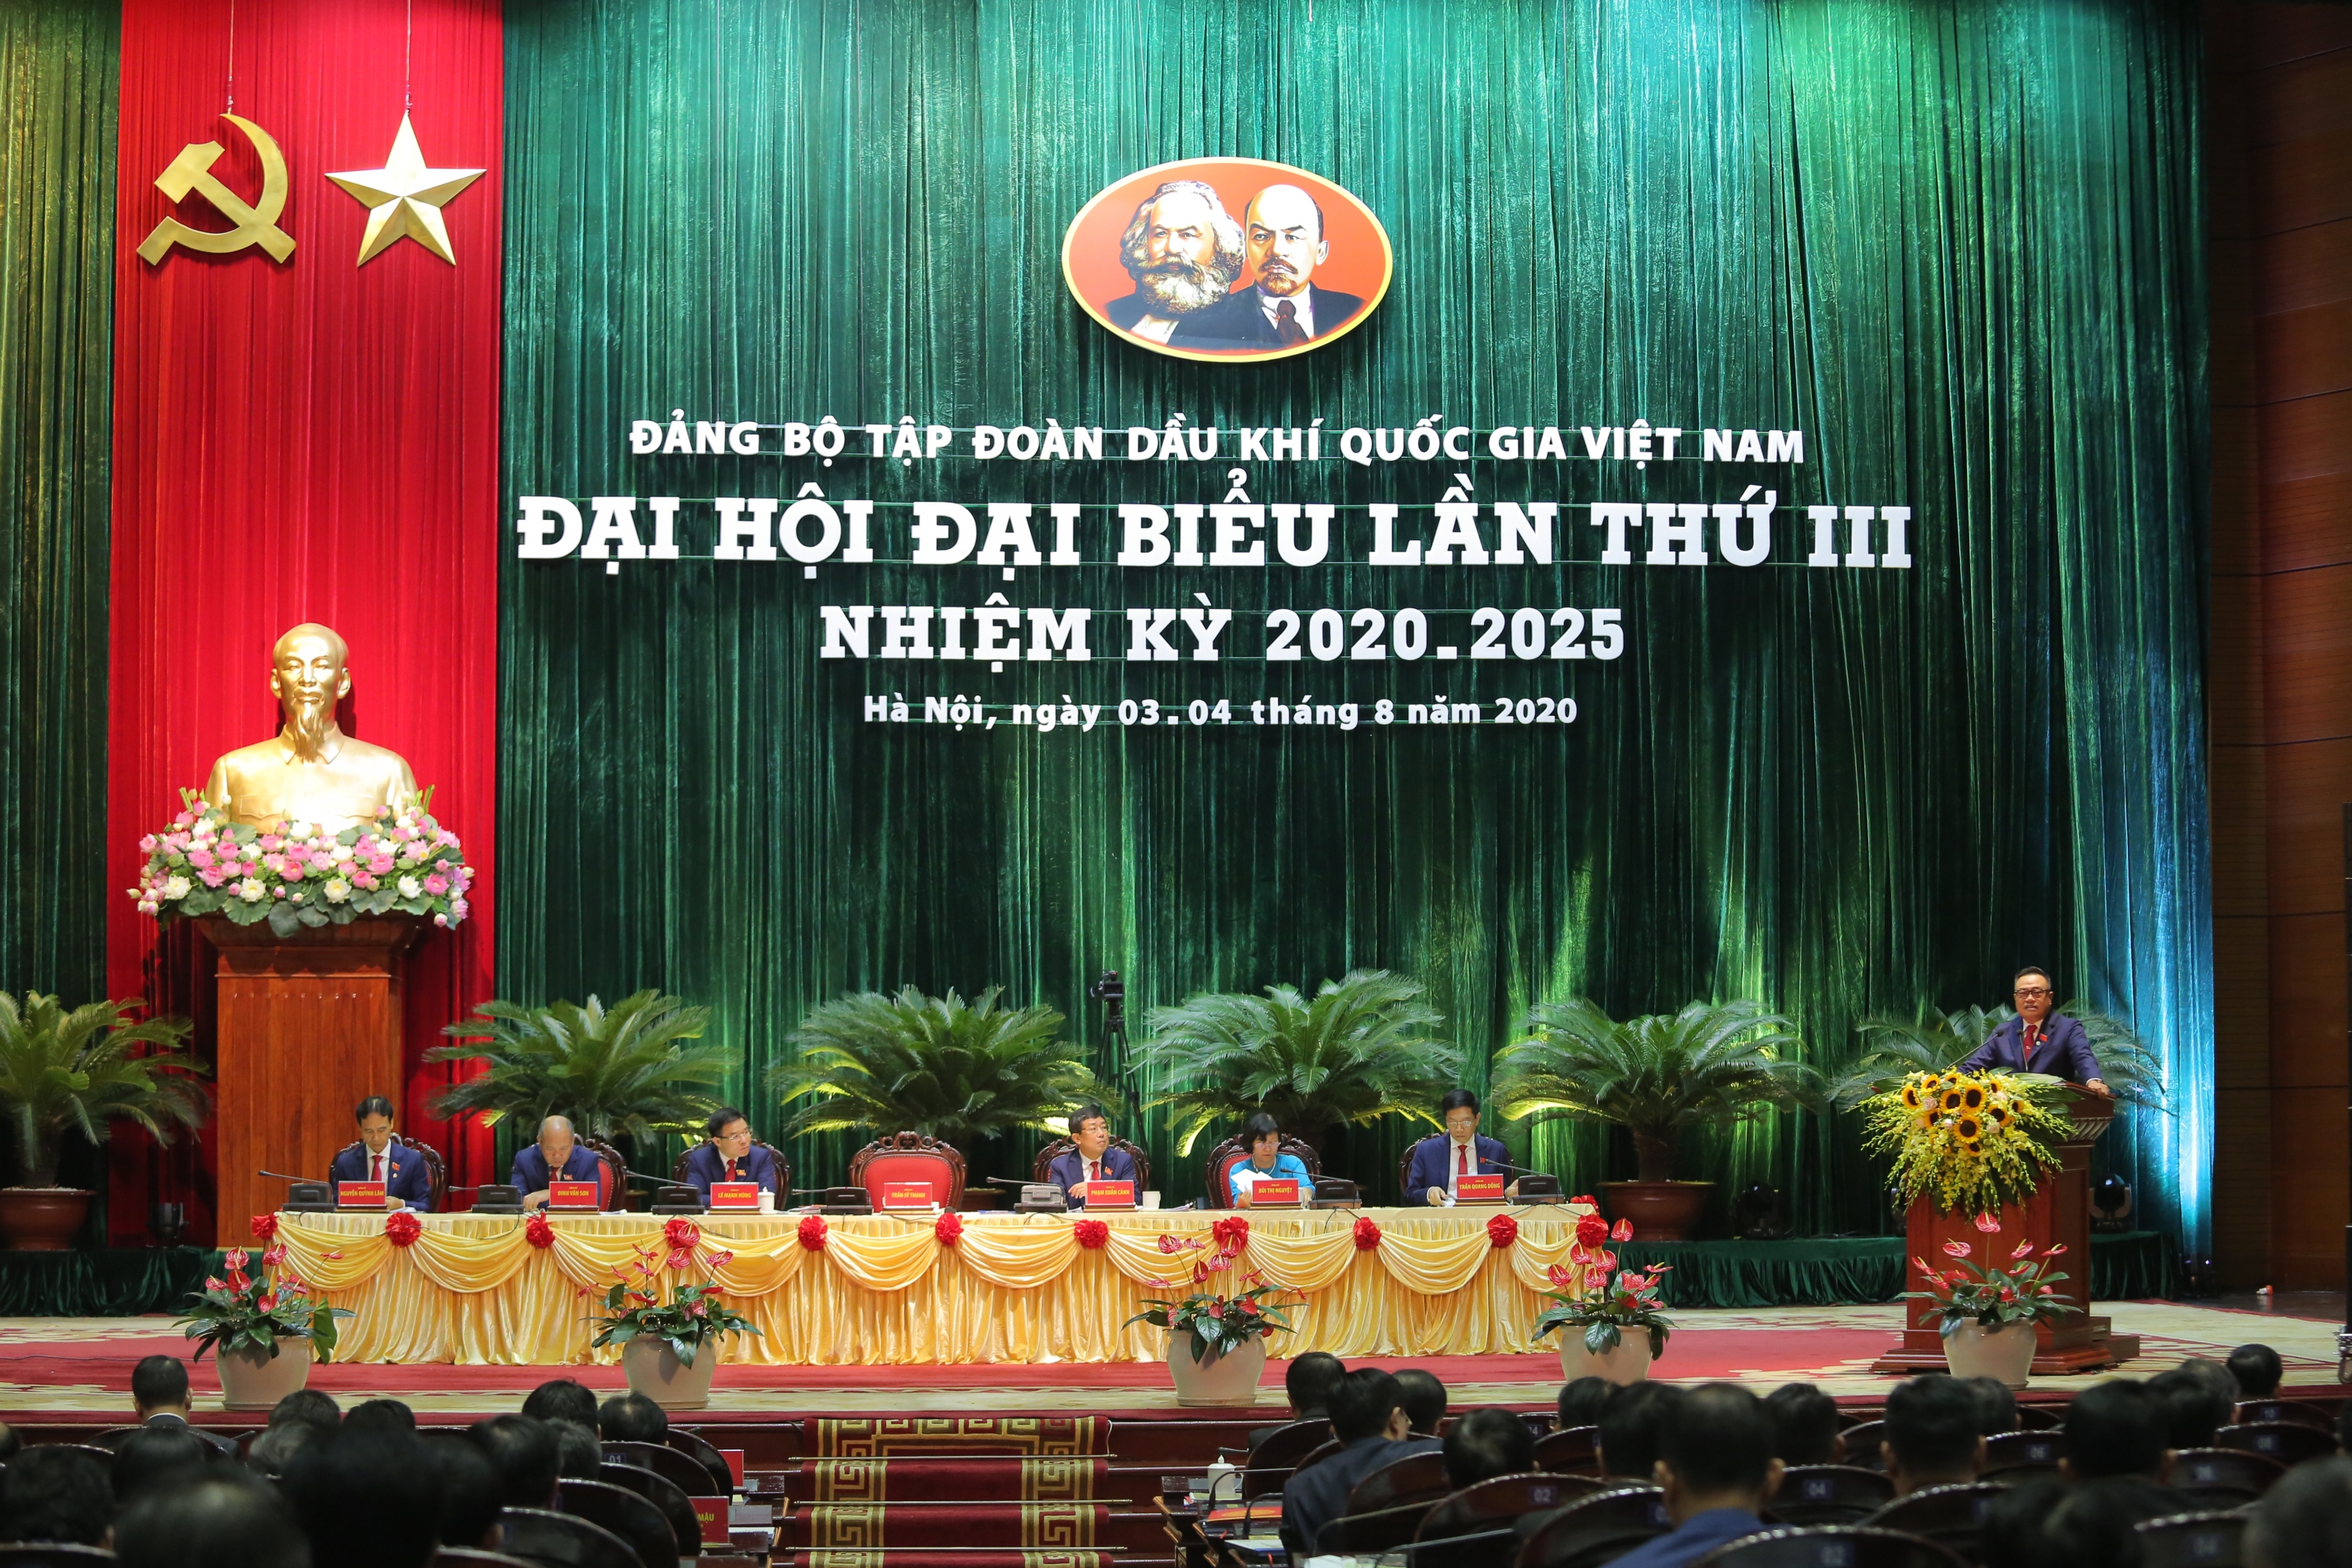 Đảng bộ Tập đoàn Dầu khí Quốc gia Việt Nam đã hoàn thành tốt các chỉ tiêu đề ra